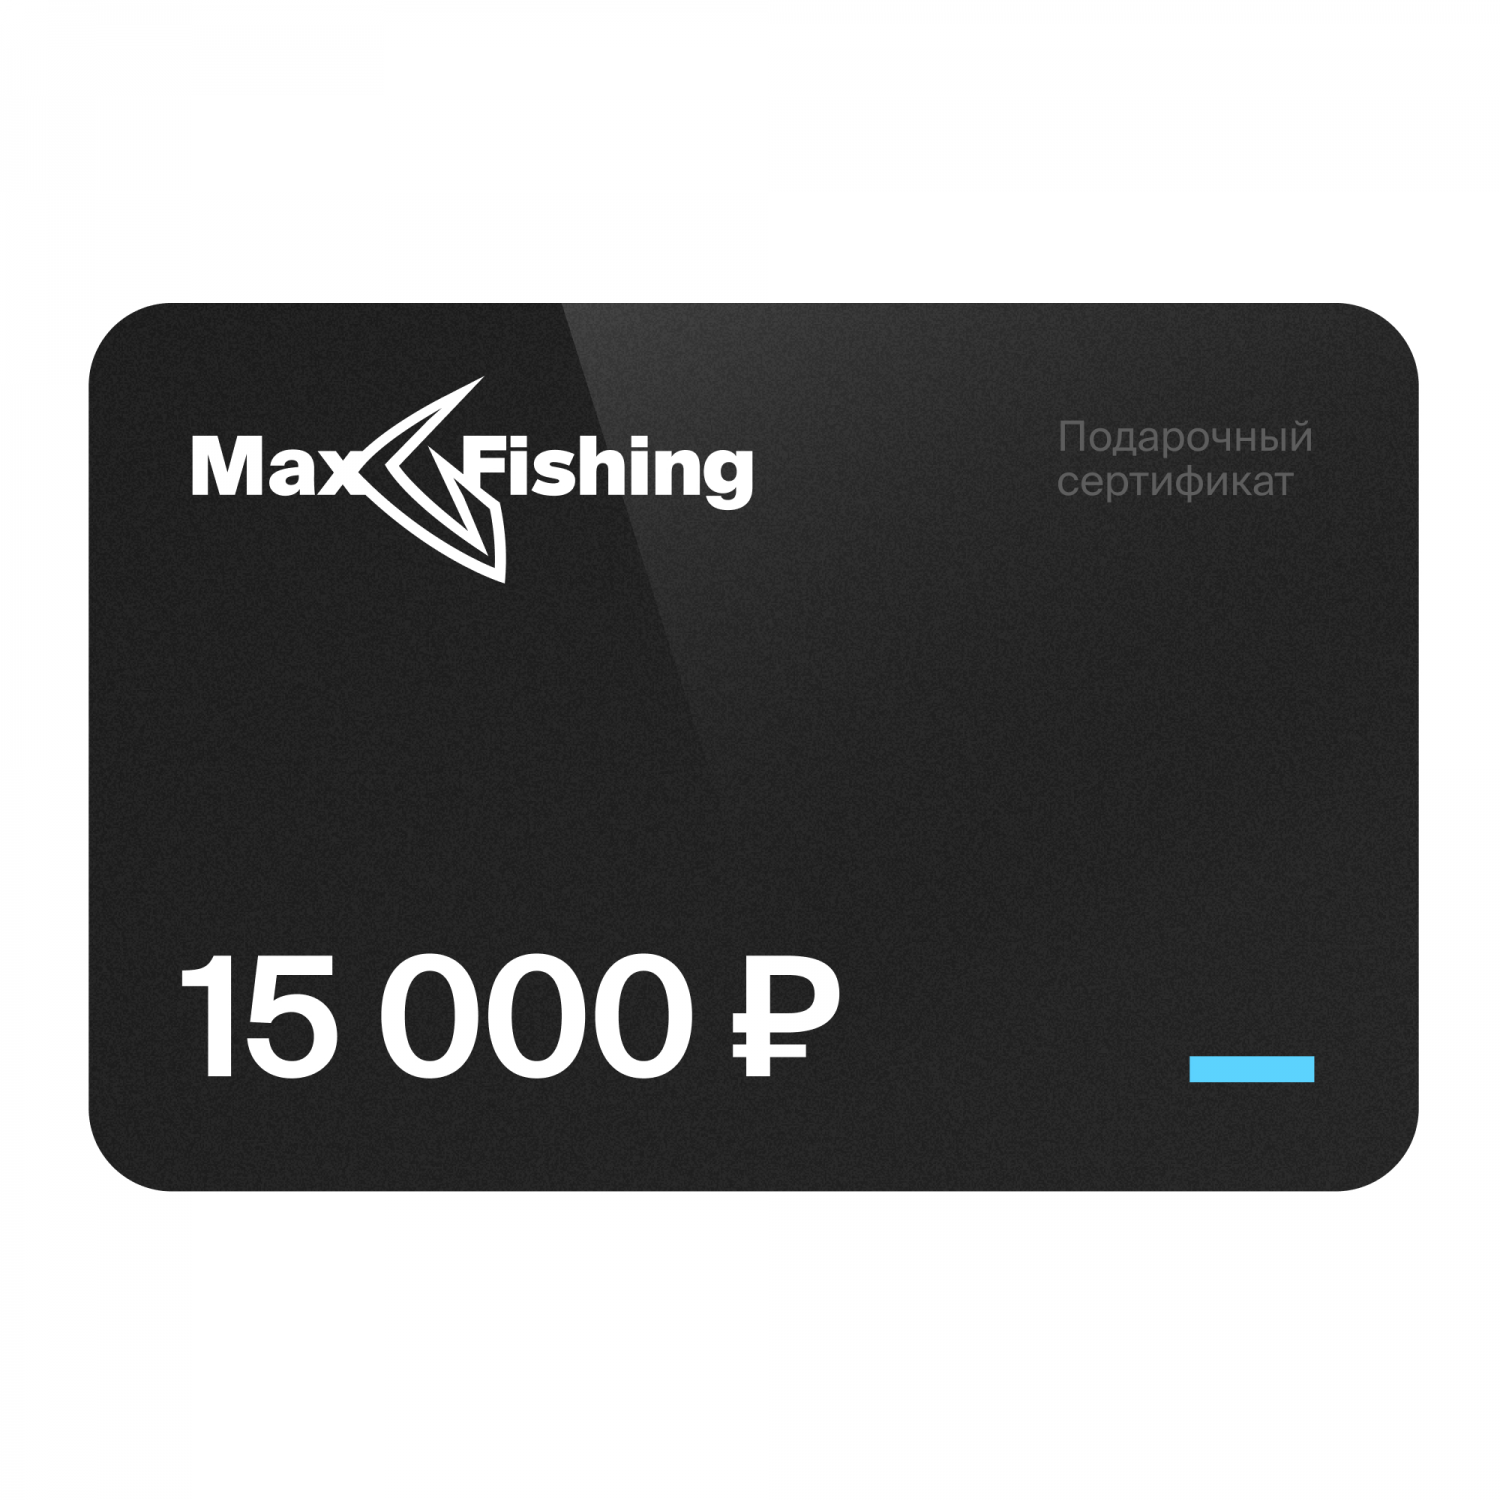 Подарочный сертификат MaxFishing 15 000 ₽ подарочный сертификат maxfishing 25